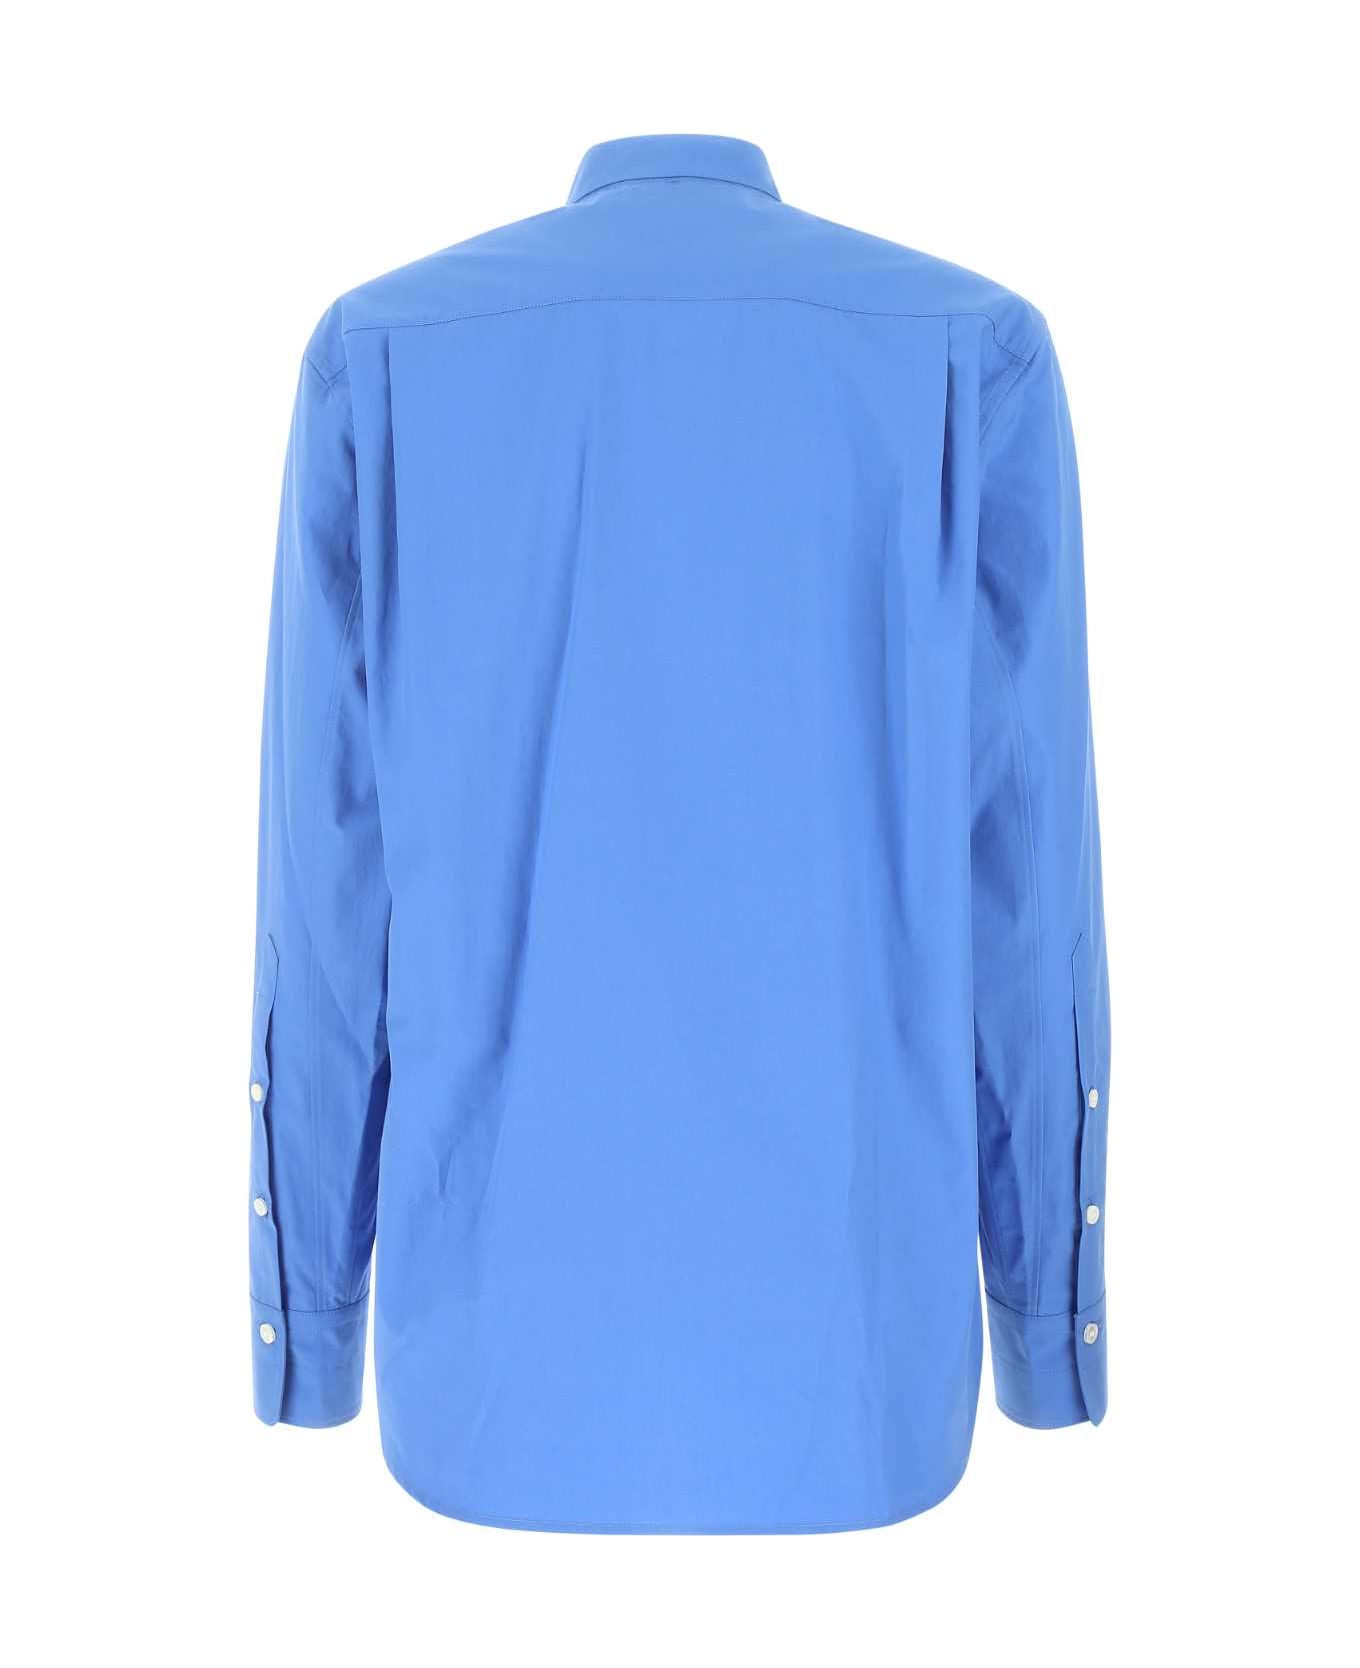 Quira Cerulean Blue Poplin Shirt - Q0063